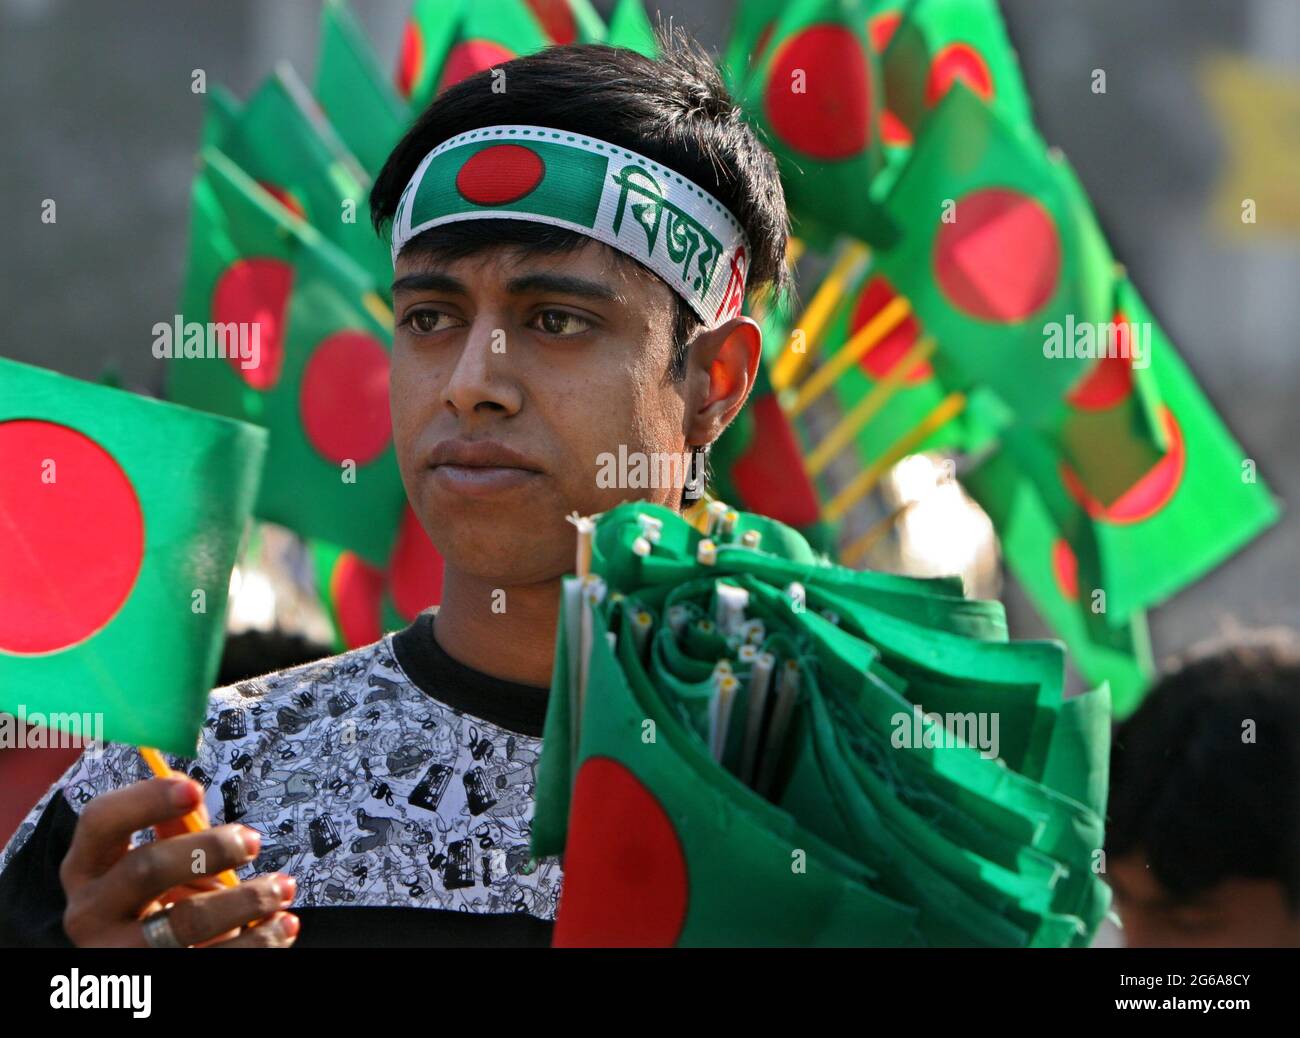 victory day of bangladesh history